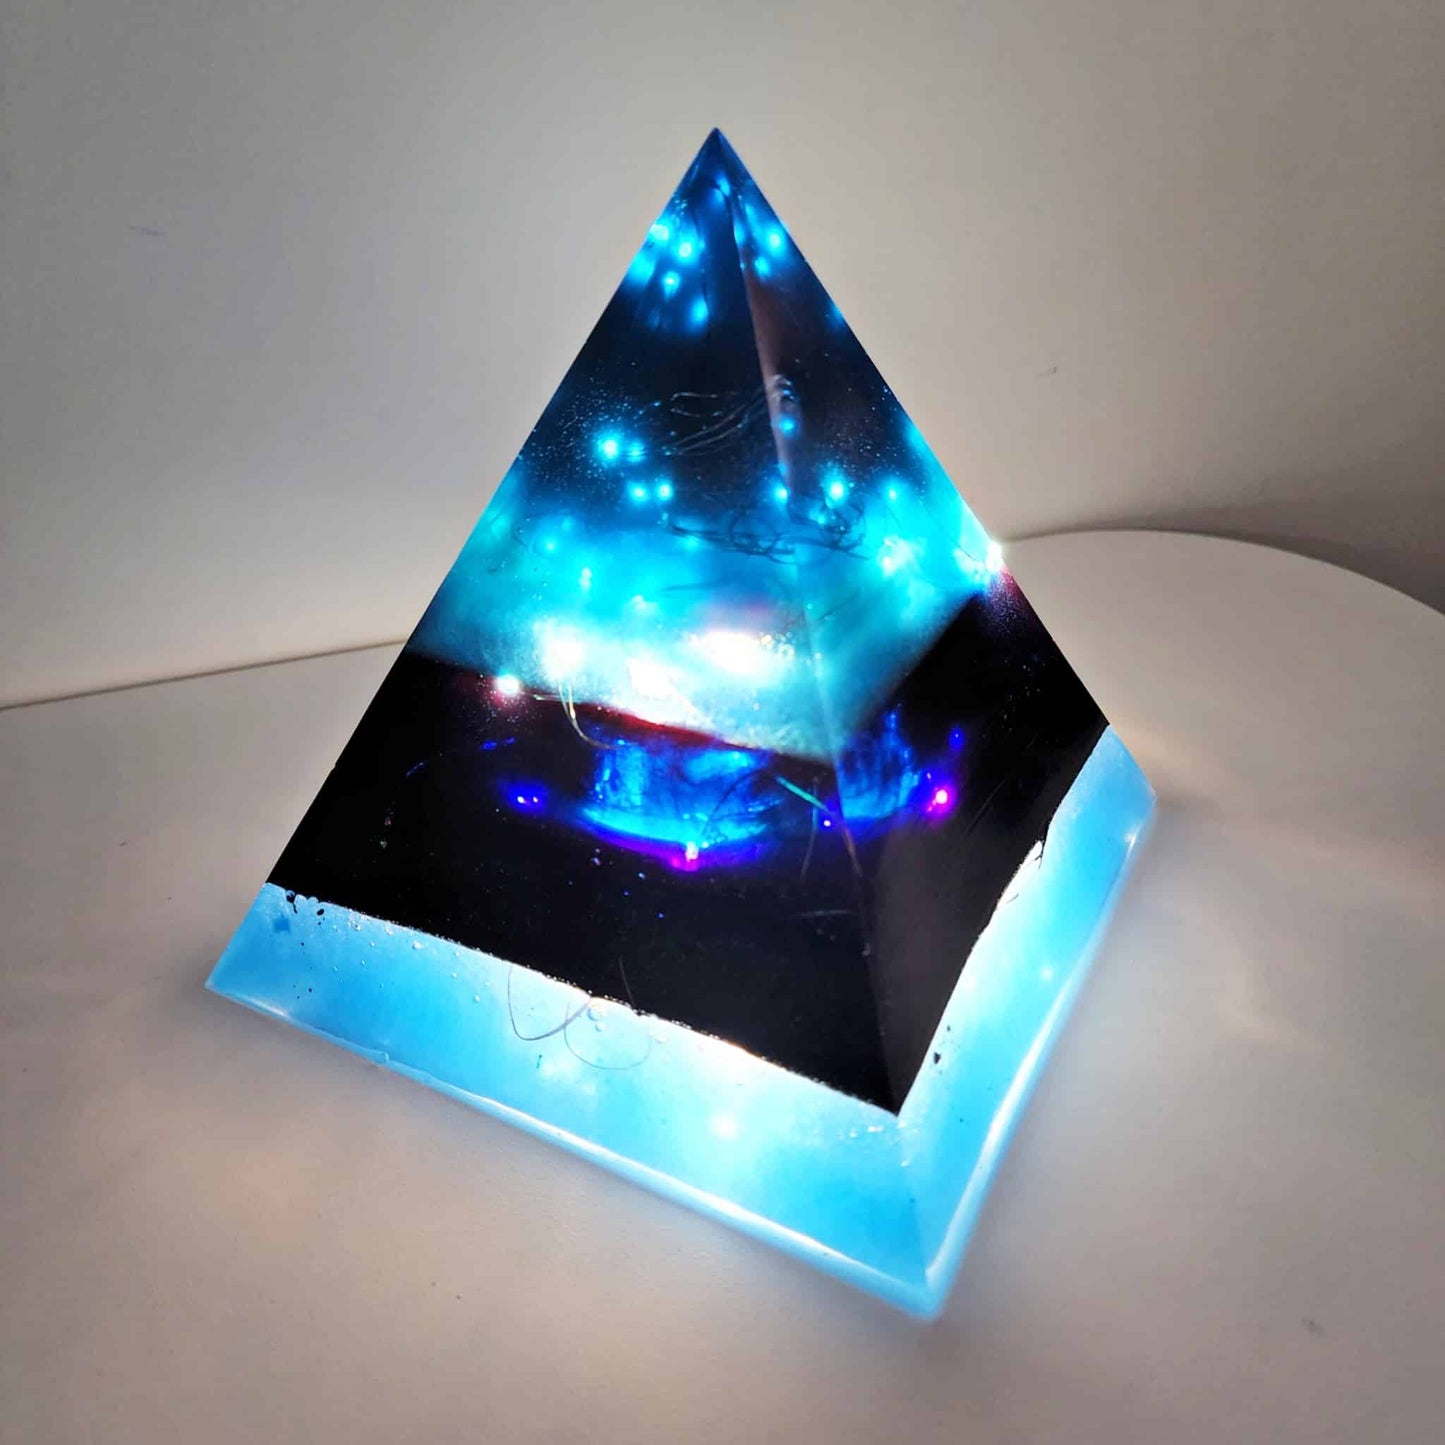 Resin Pyramid Light Kit and Class